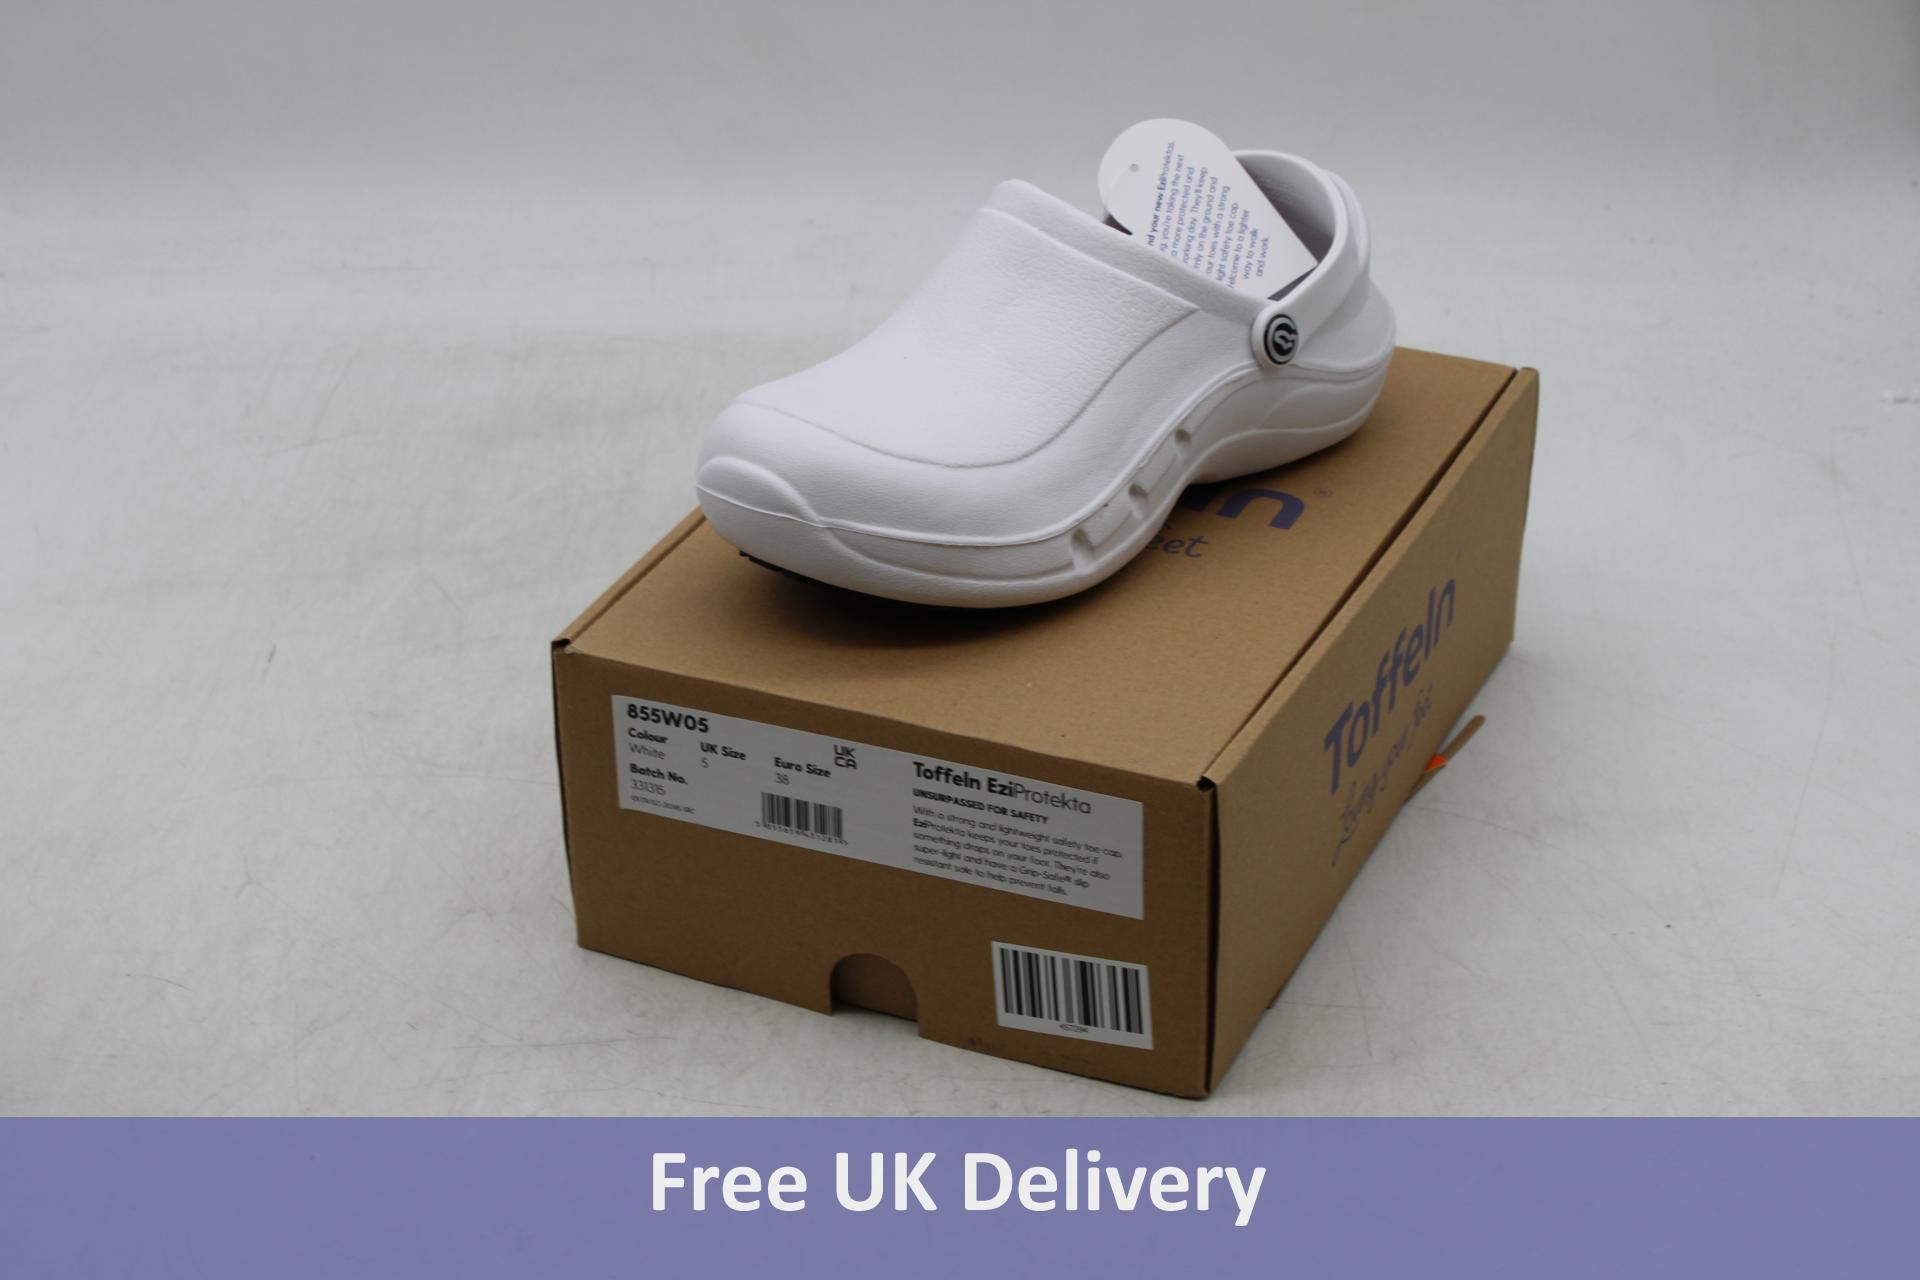 Toffeln Unisex Eziklog Sandals, White, UK 4